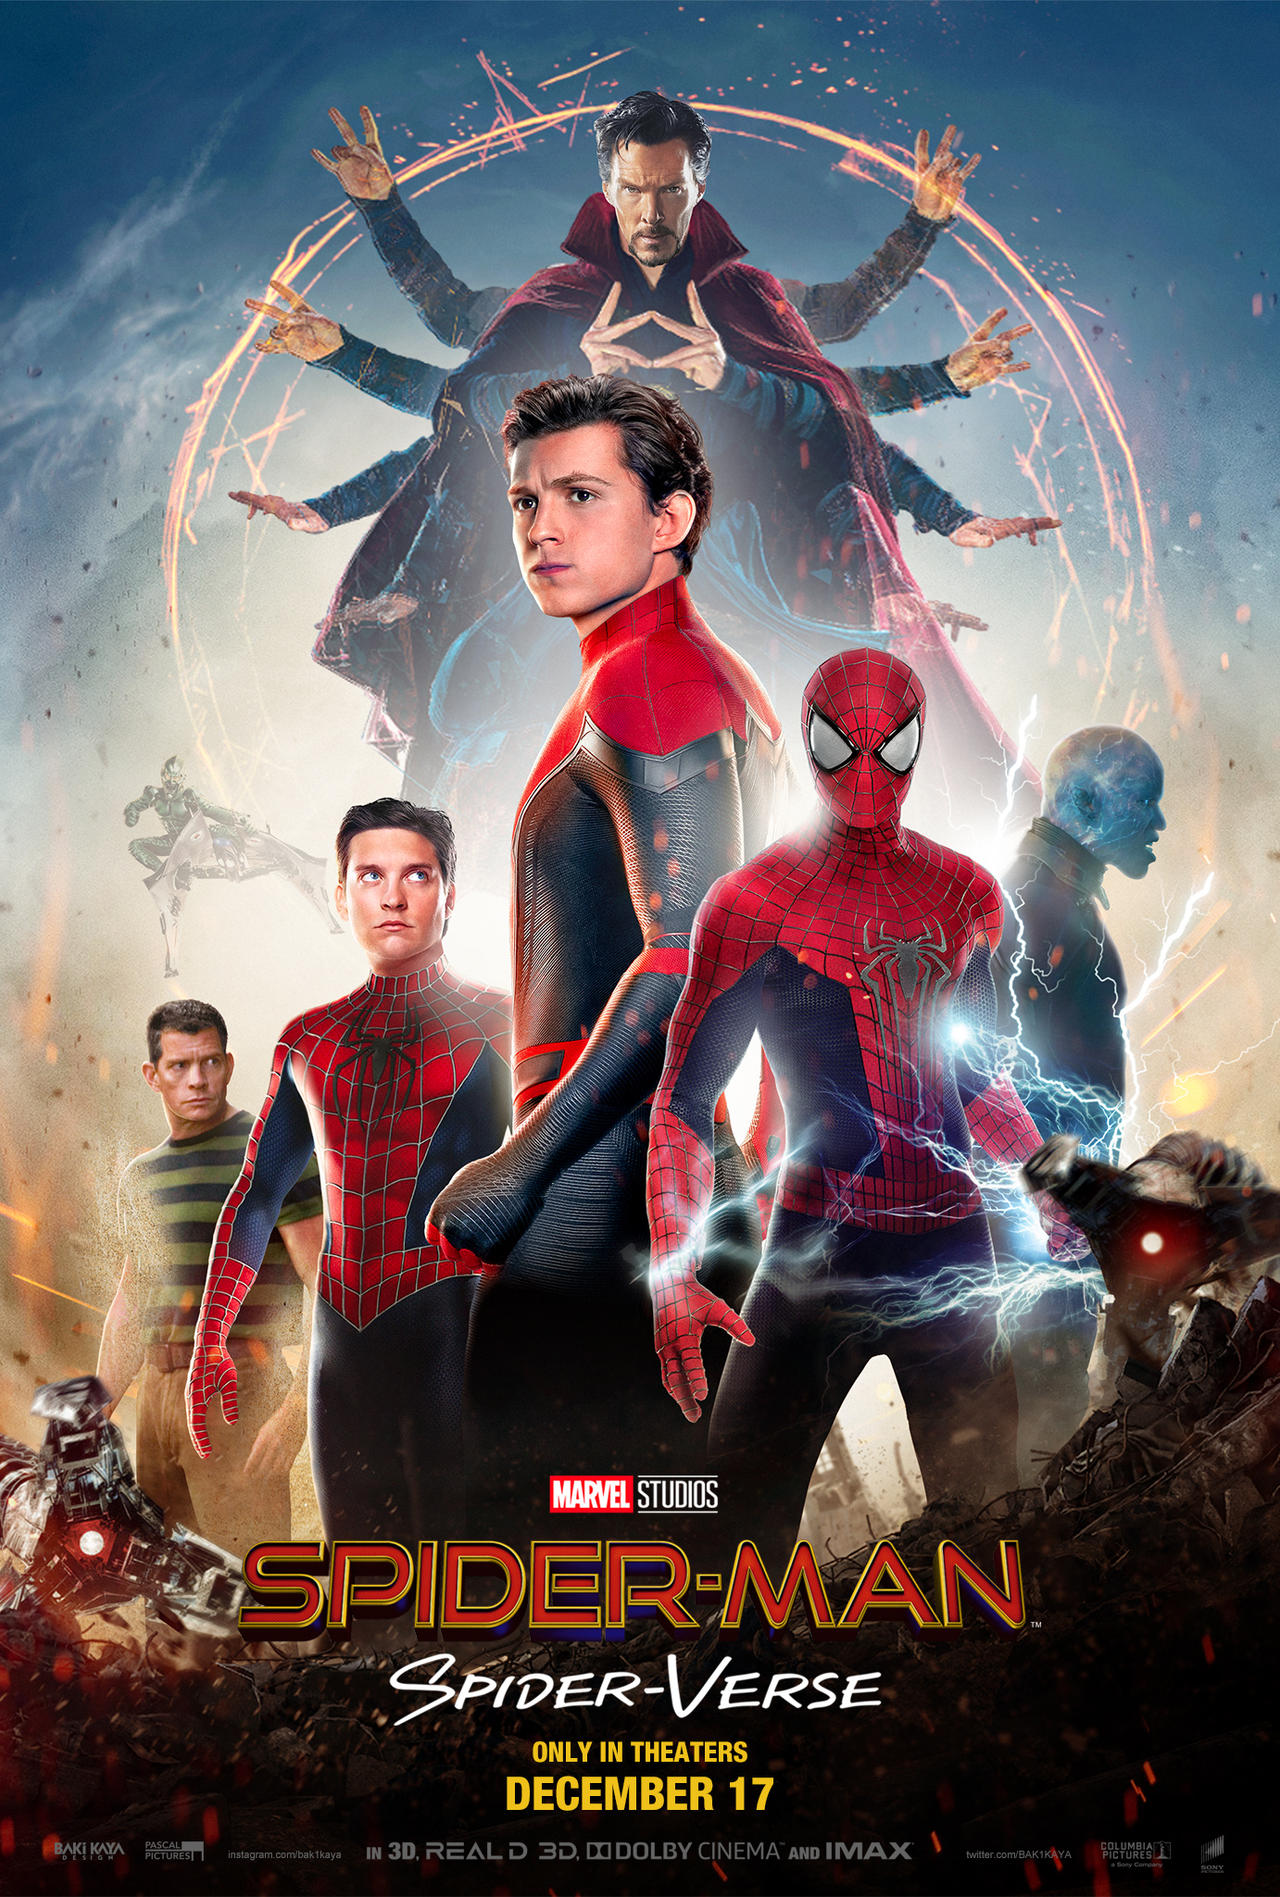 Spider-Man: Spider-Verse (2021) Poster by bakikayaa on DeviantArt